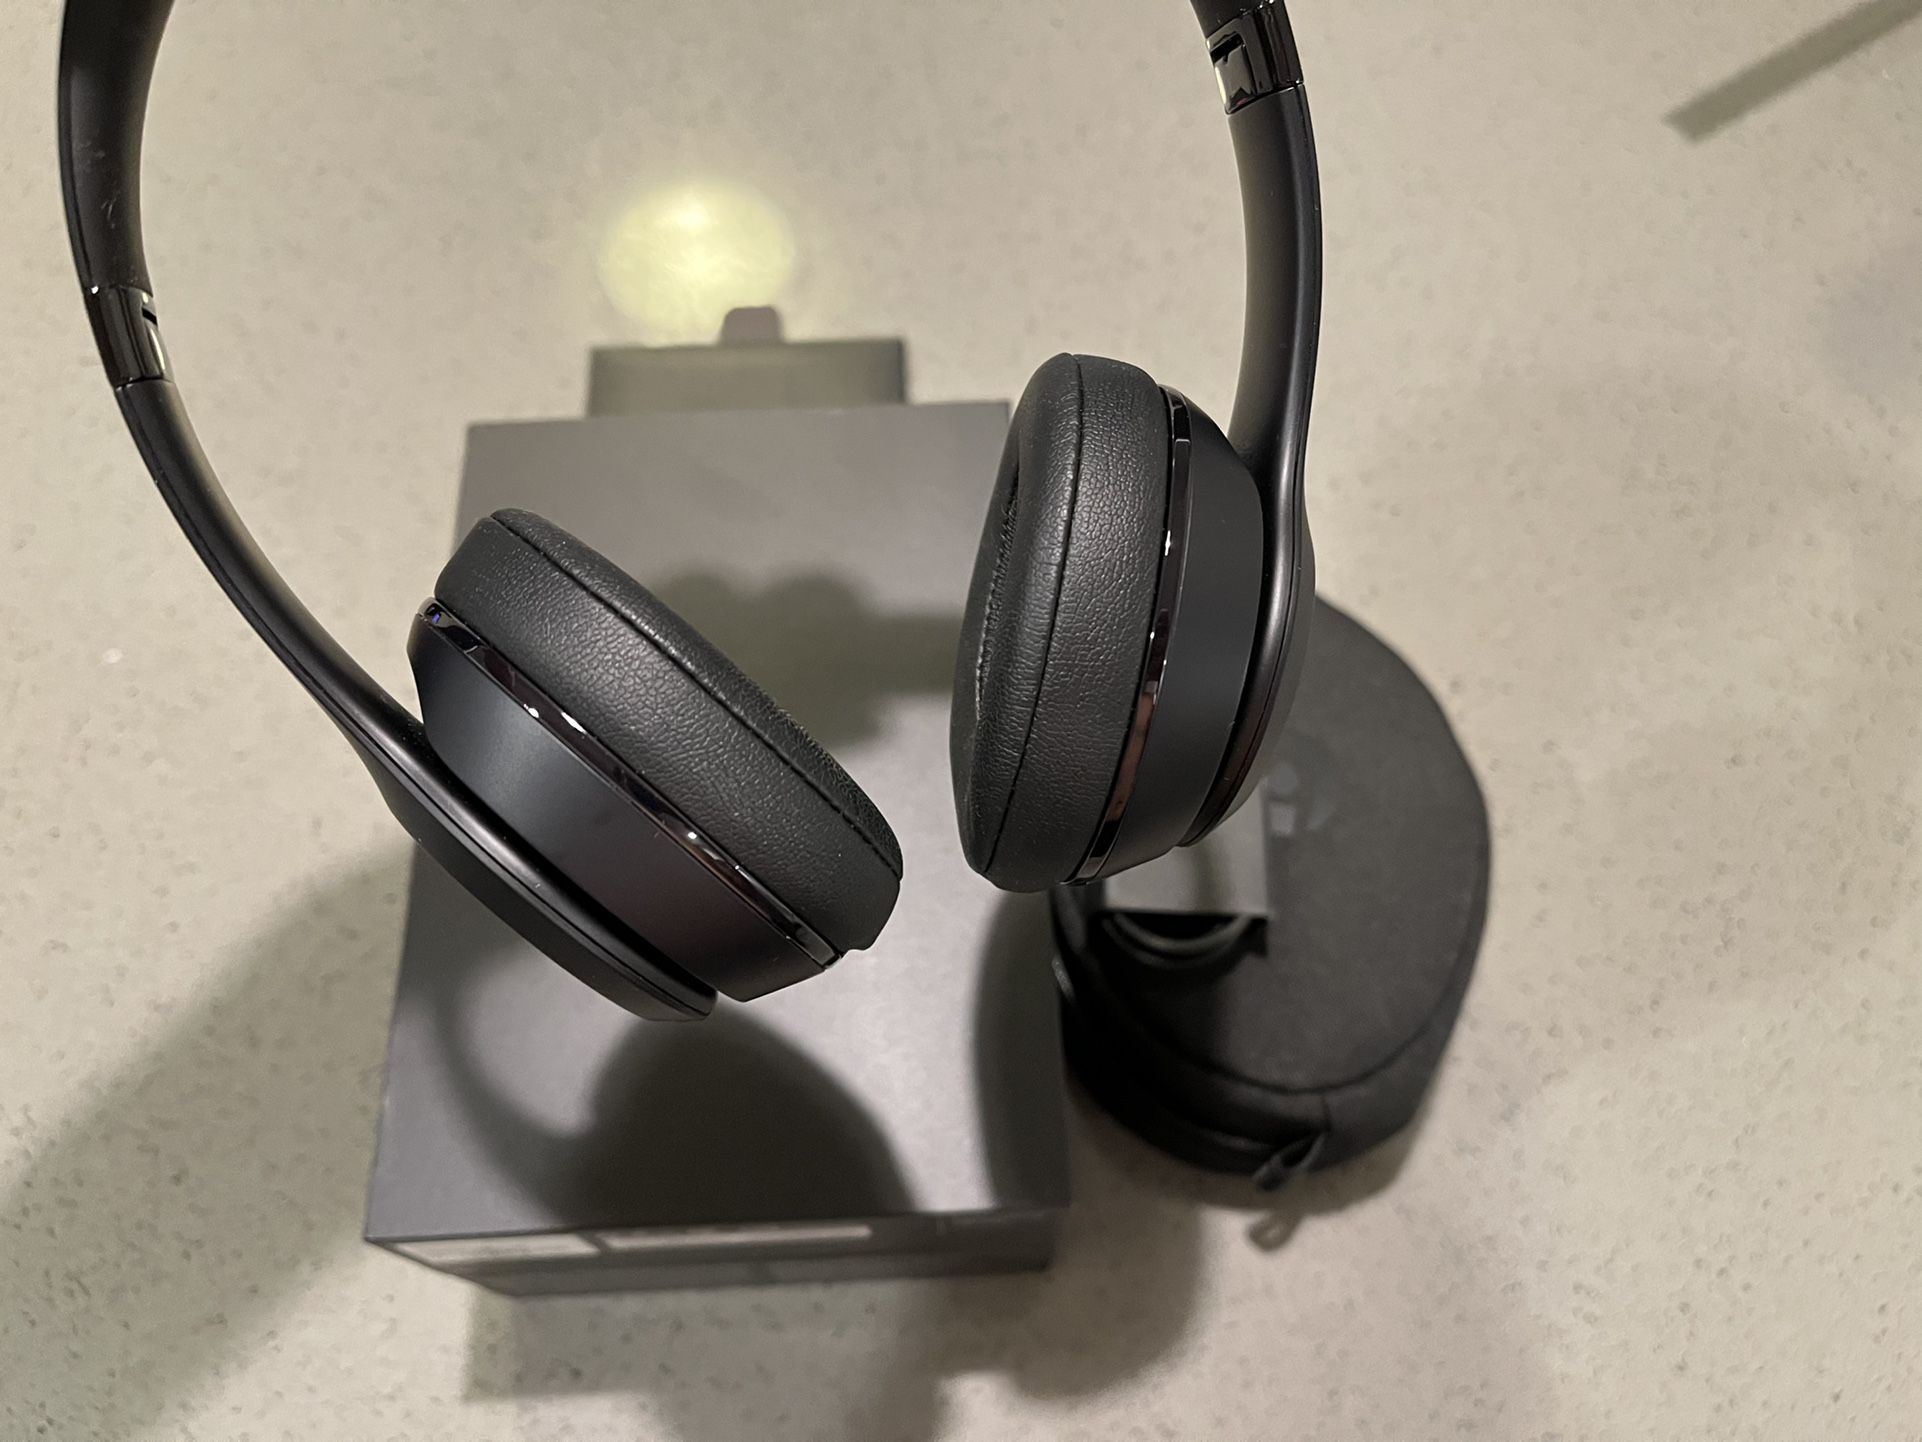 Apple Headphones Beats Solo 3 By Dr. Dre Wireless Bluetooth On-ear